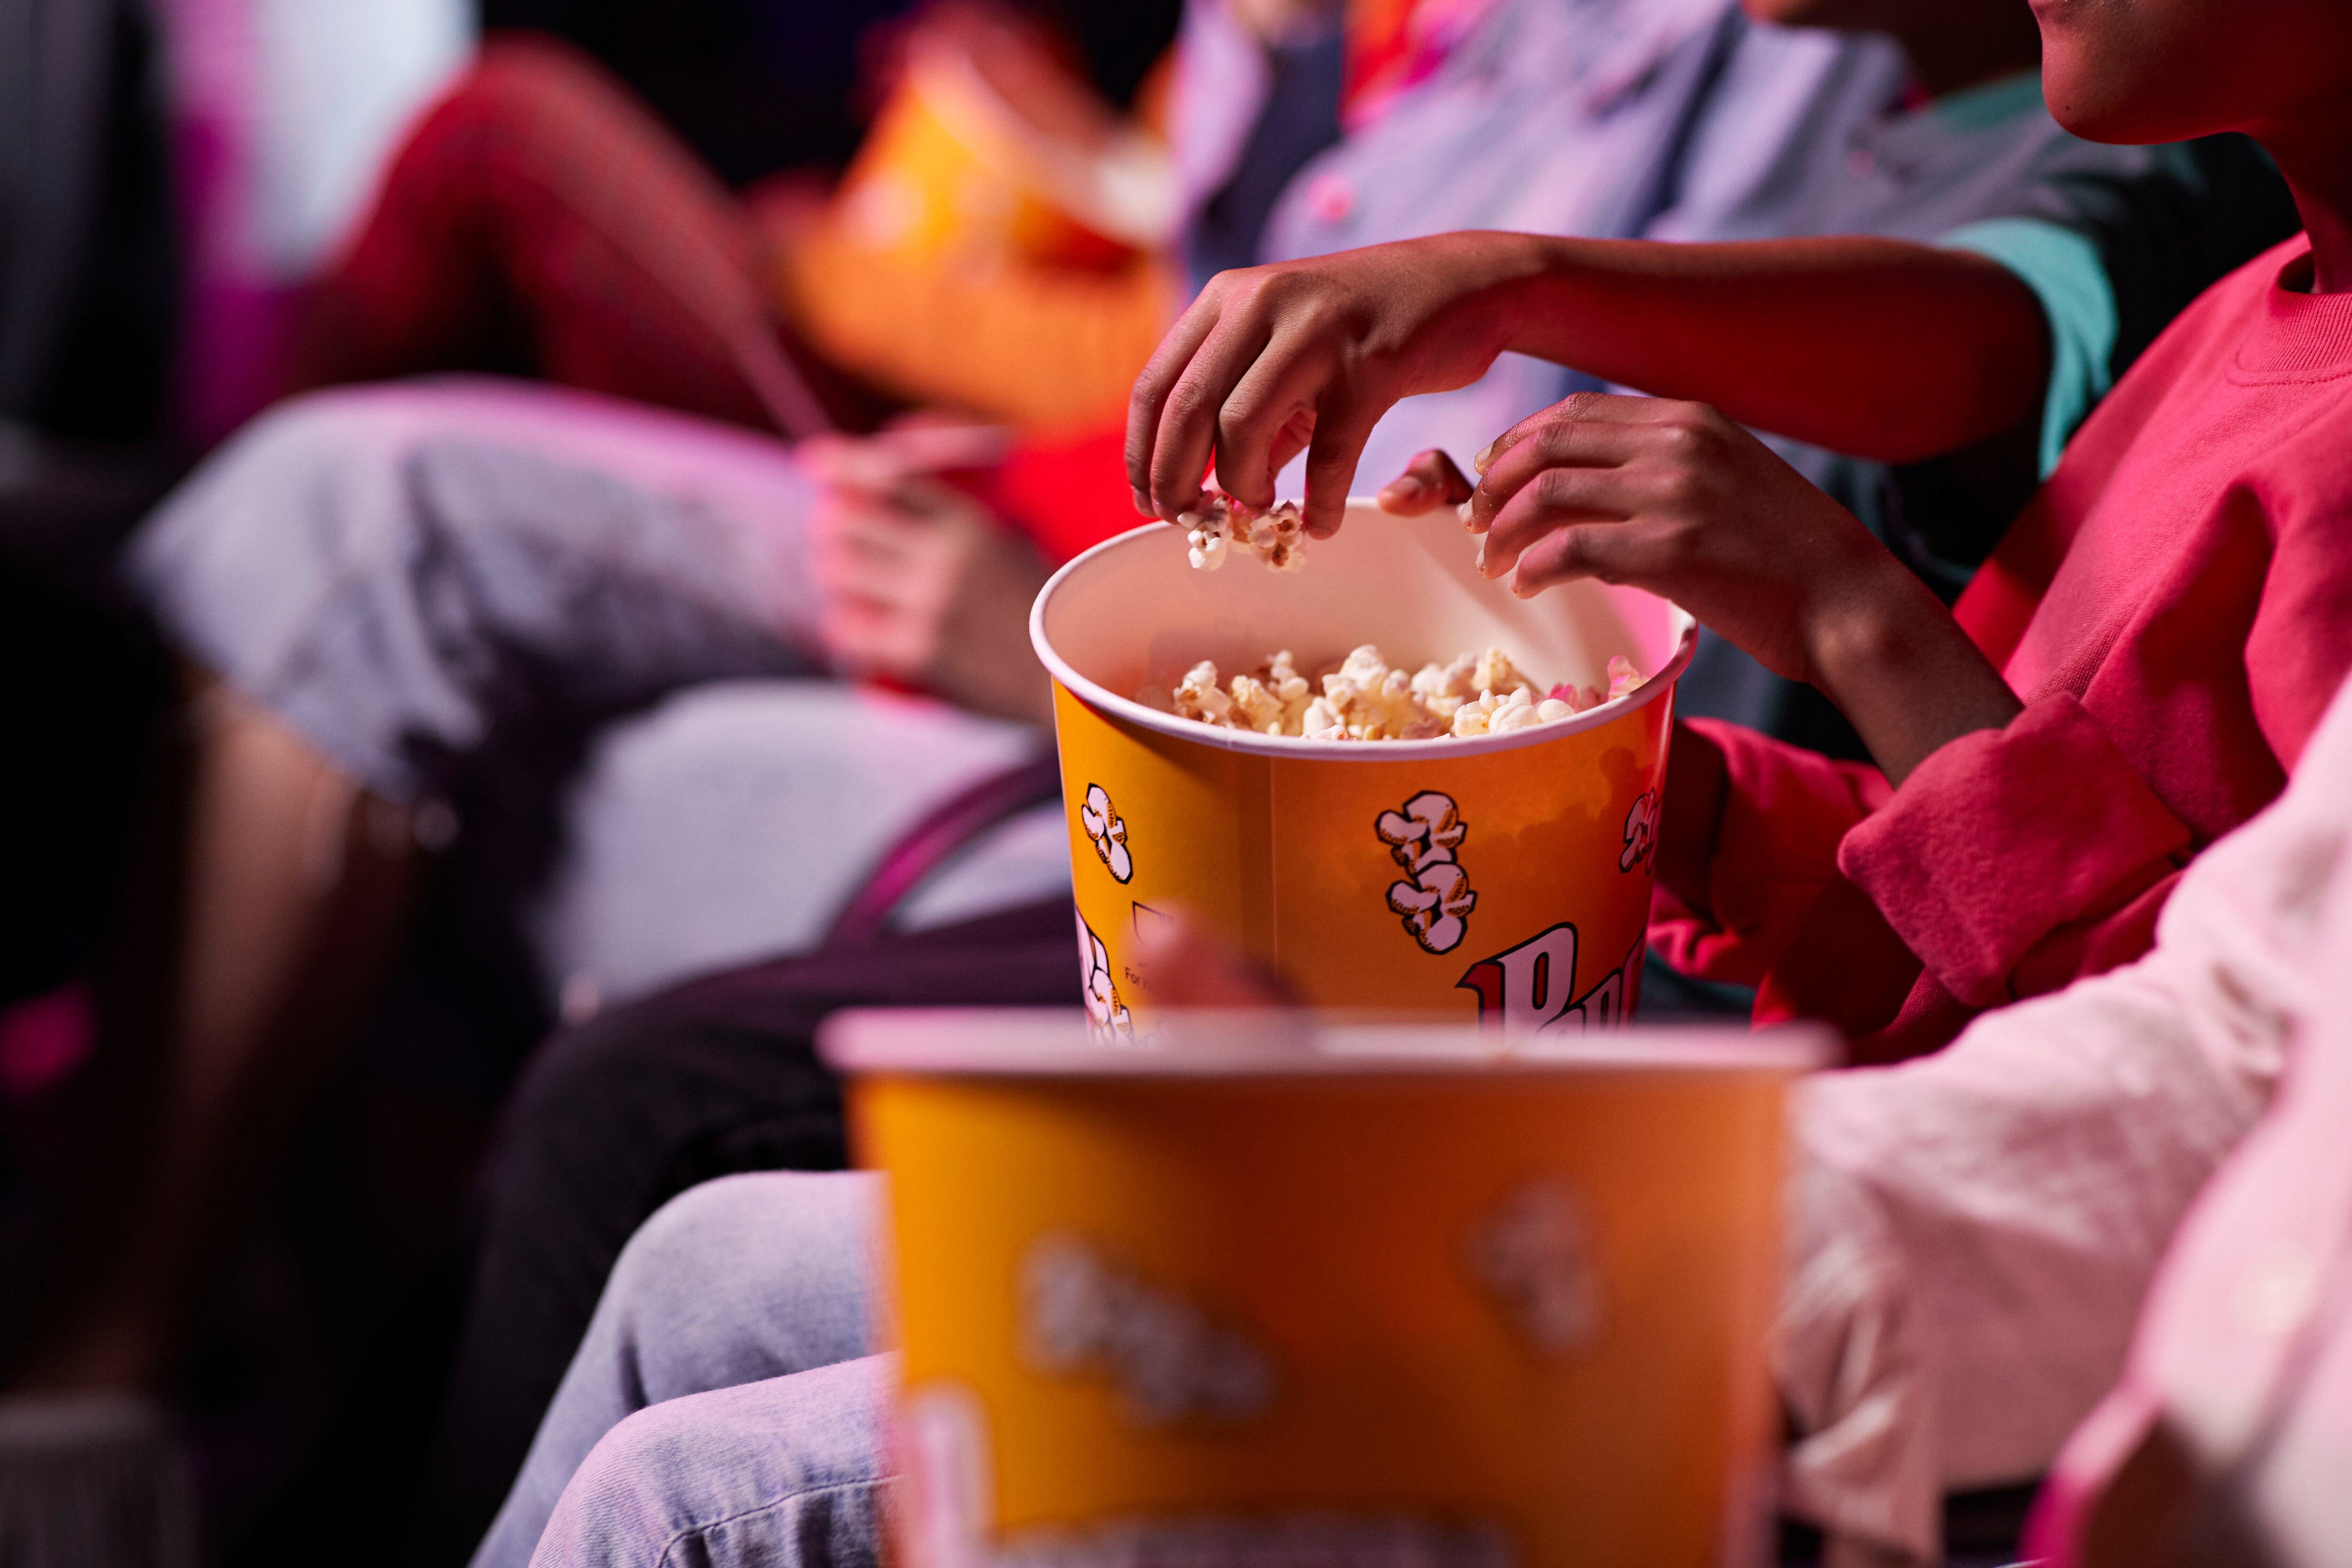 día del cine en chile: cuándo es, qué precios tienen las entradas y cuáles son las películas en cartelera